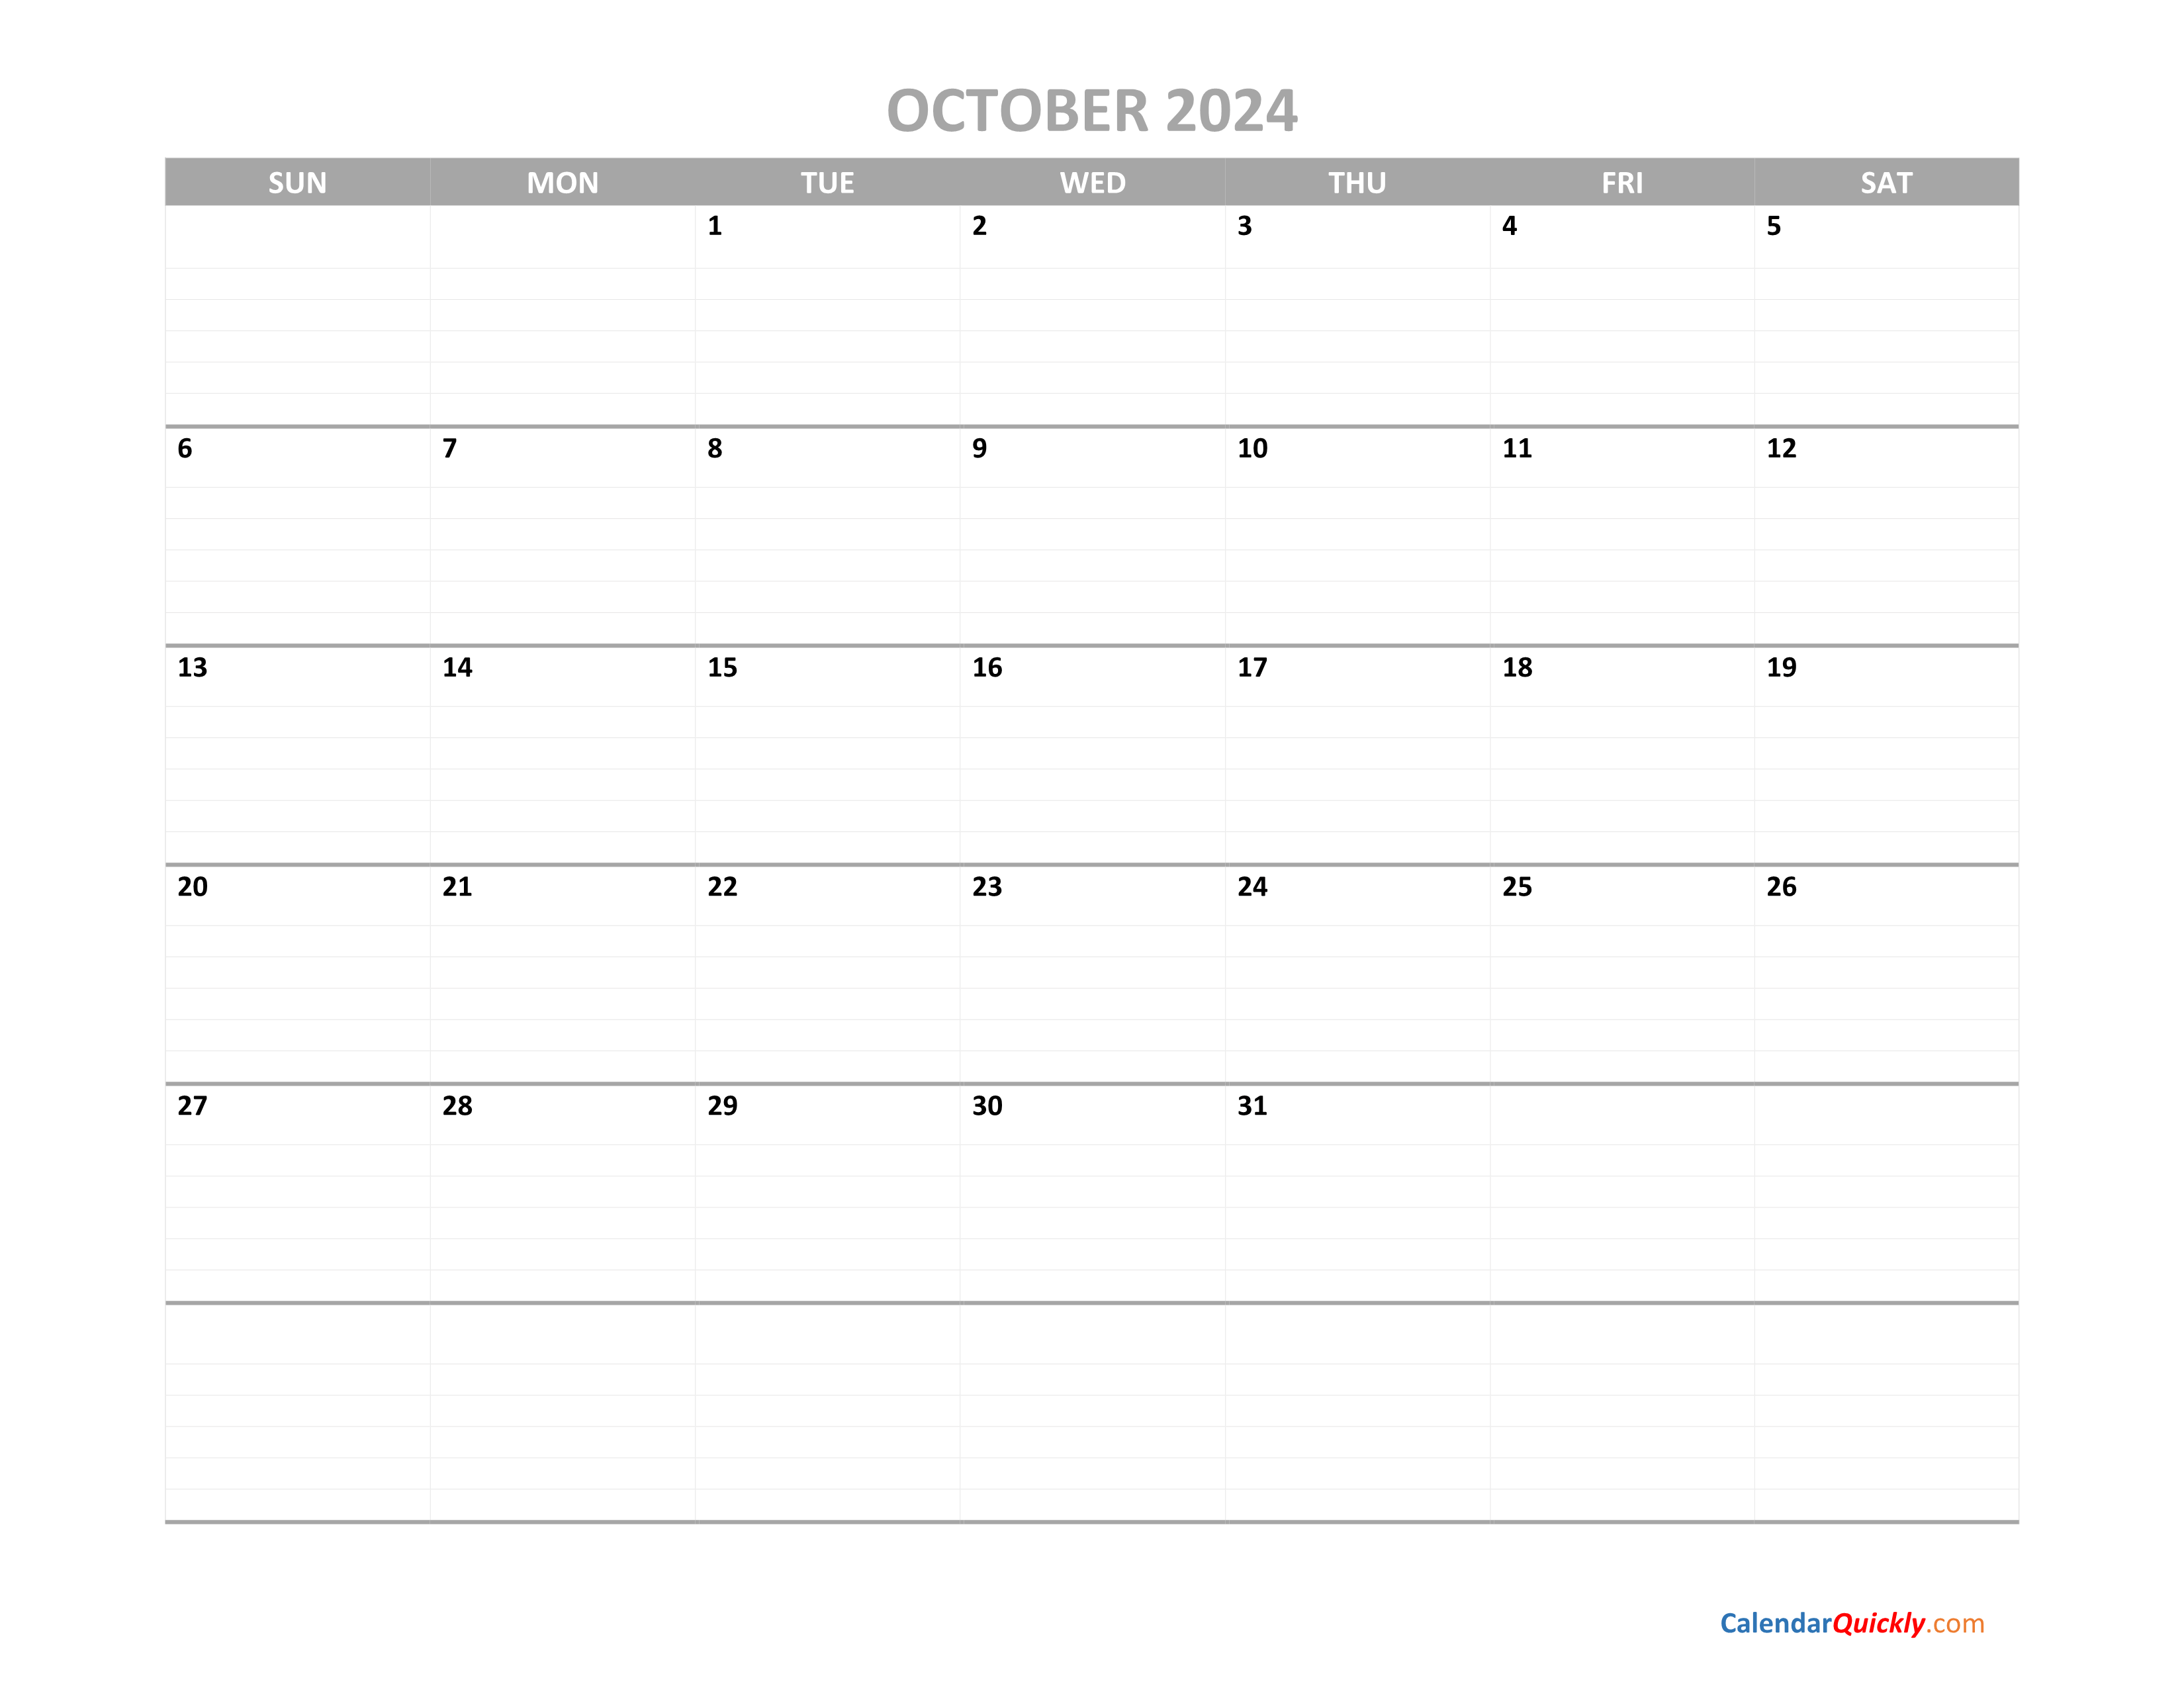 October Calendar 2024 Printable Calendar Quickly